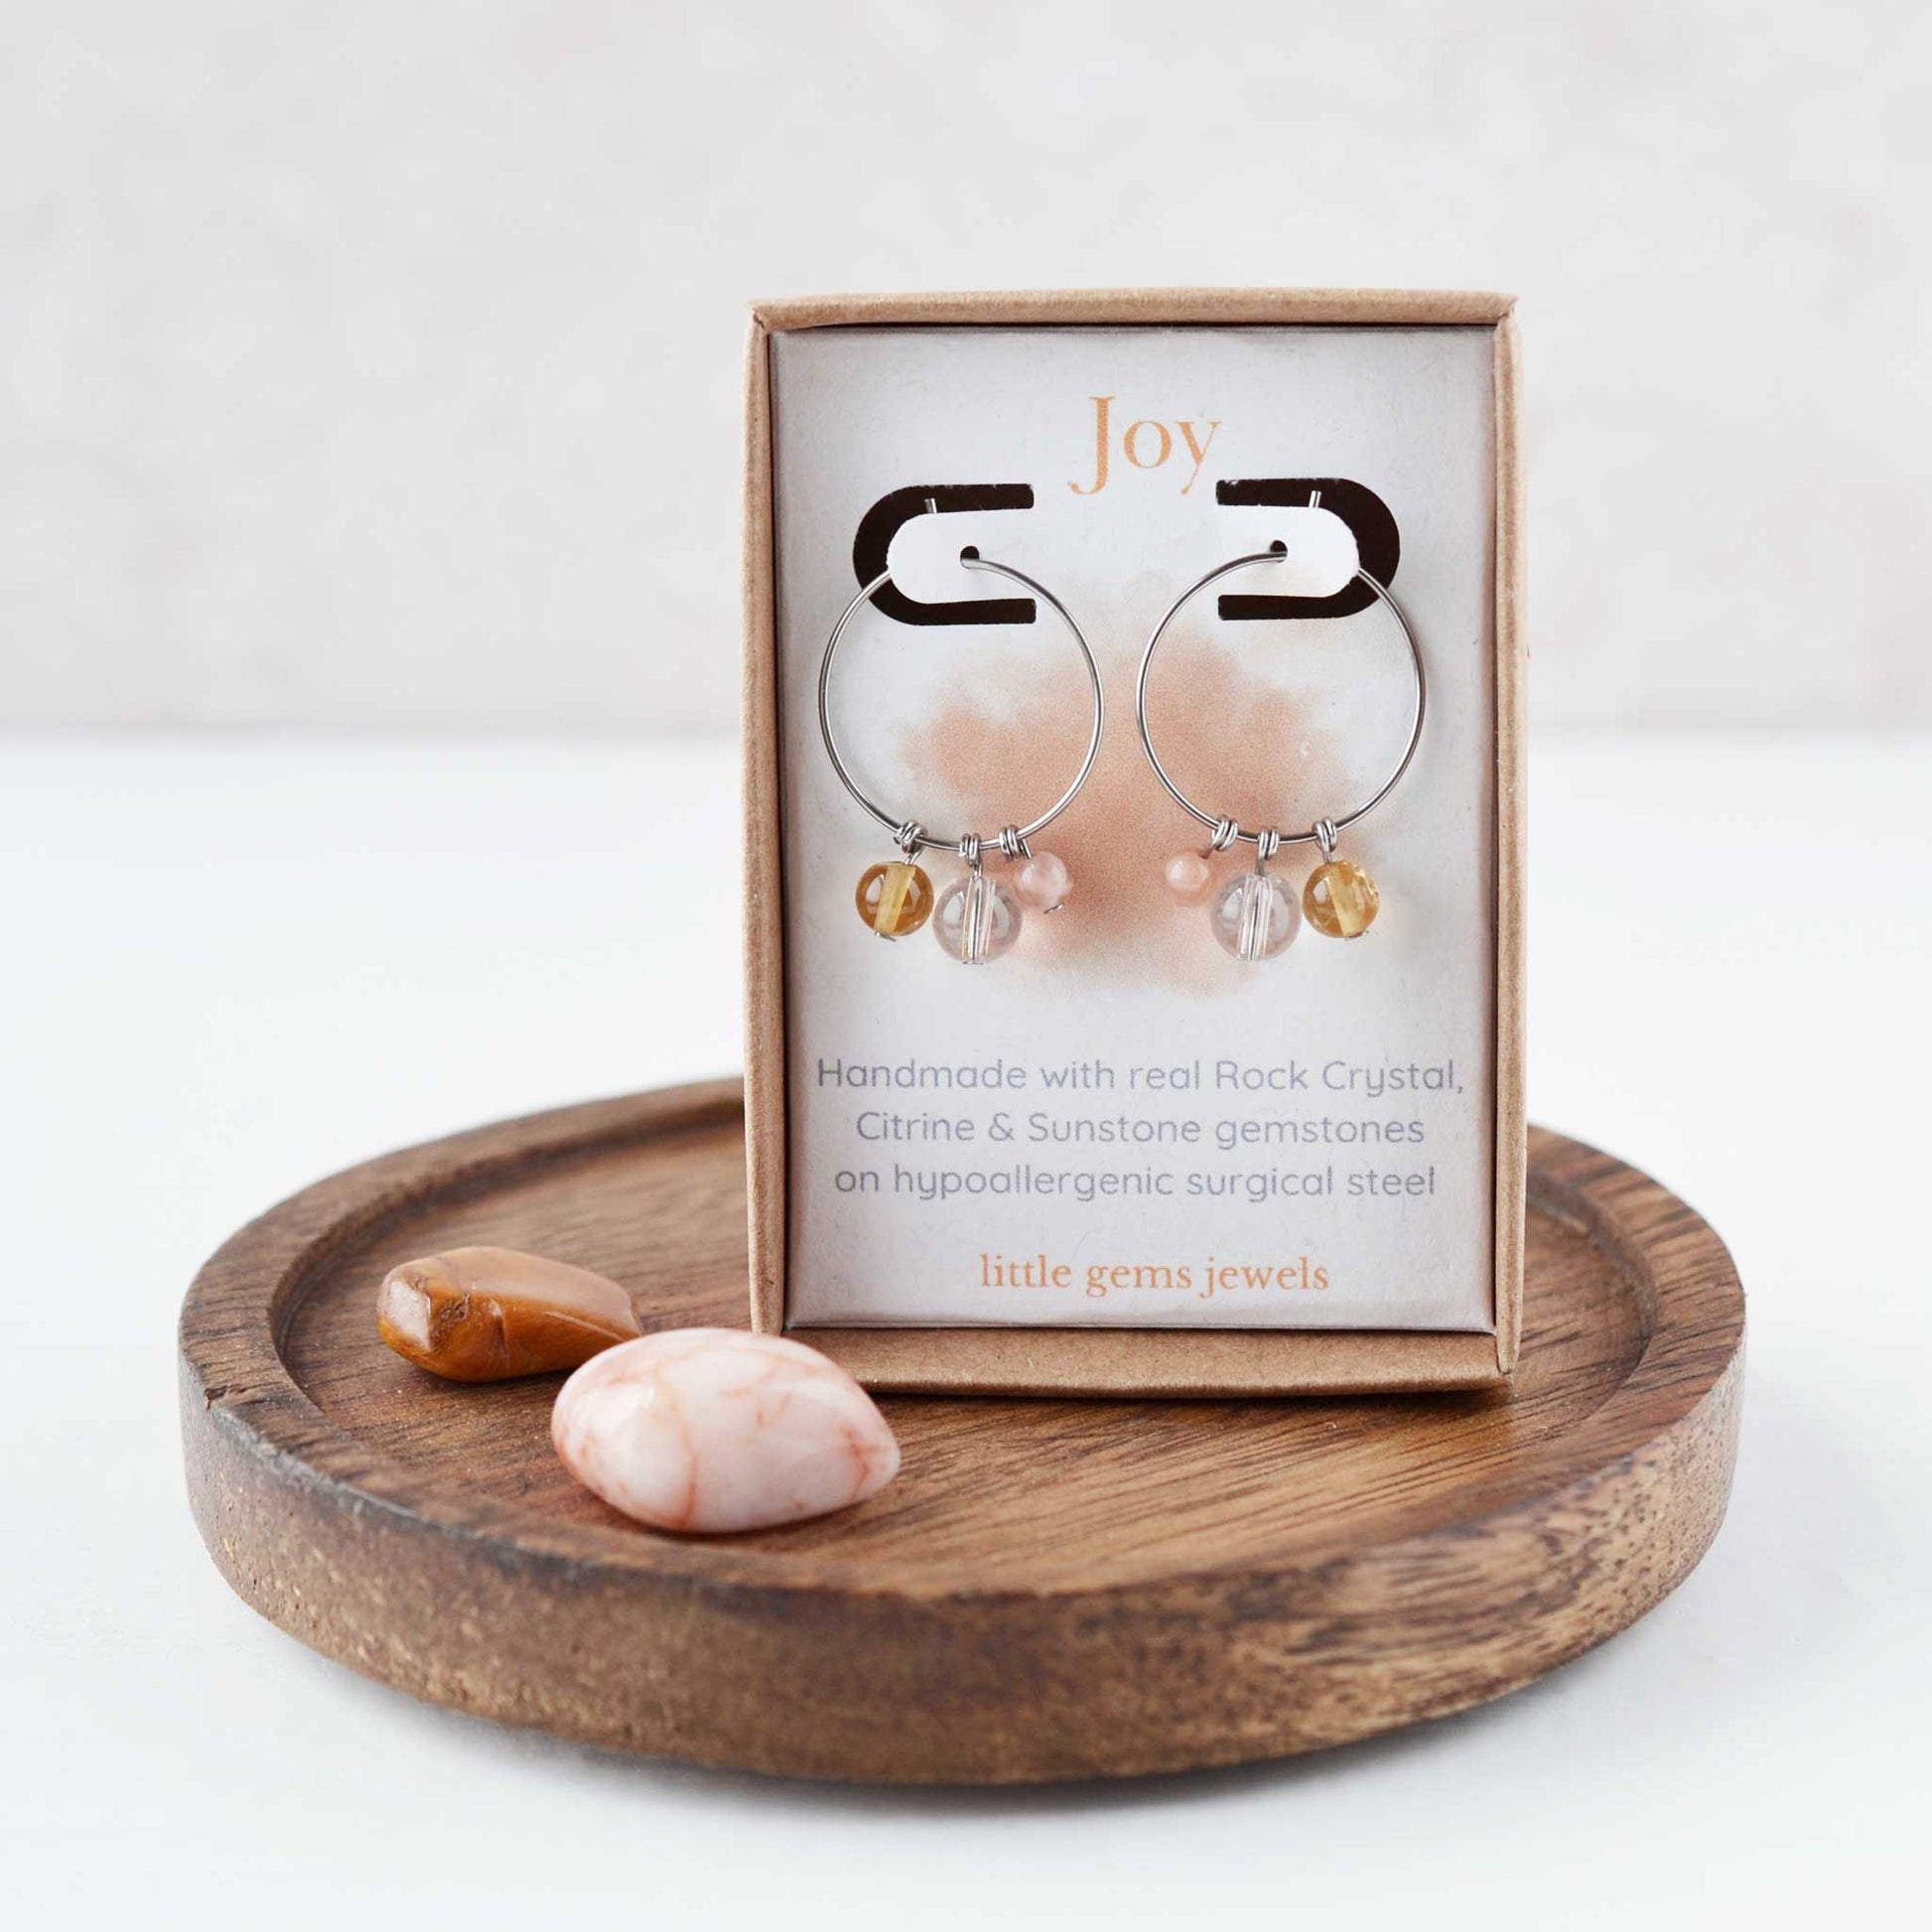 Gemstones for joy hoop earrings in eco friendly gift box